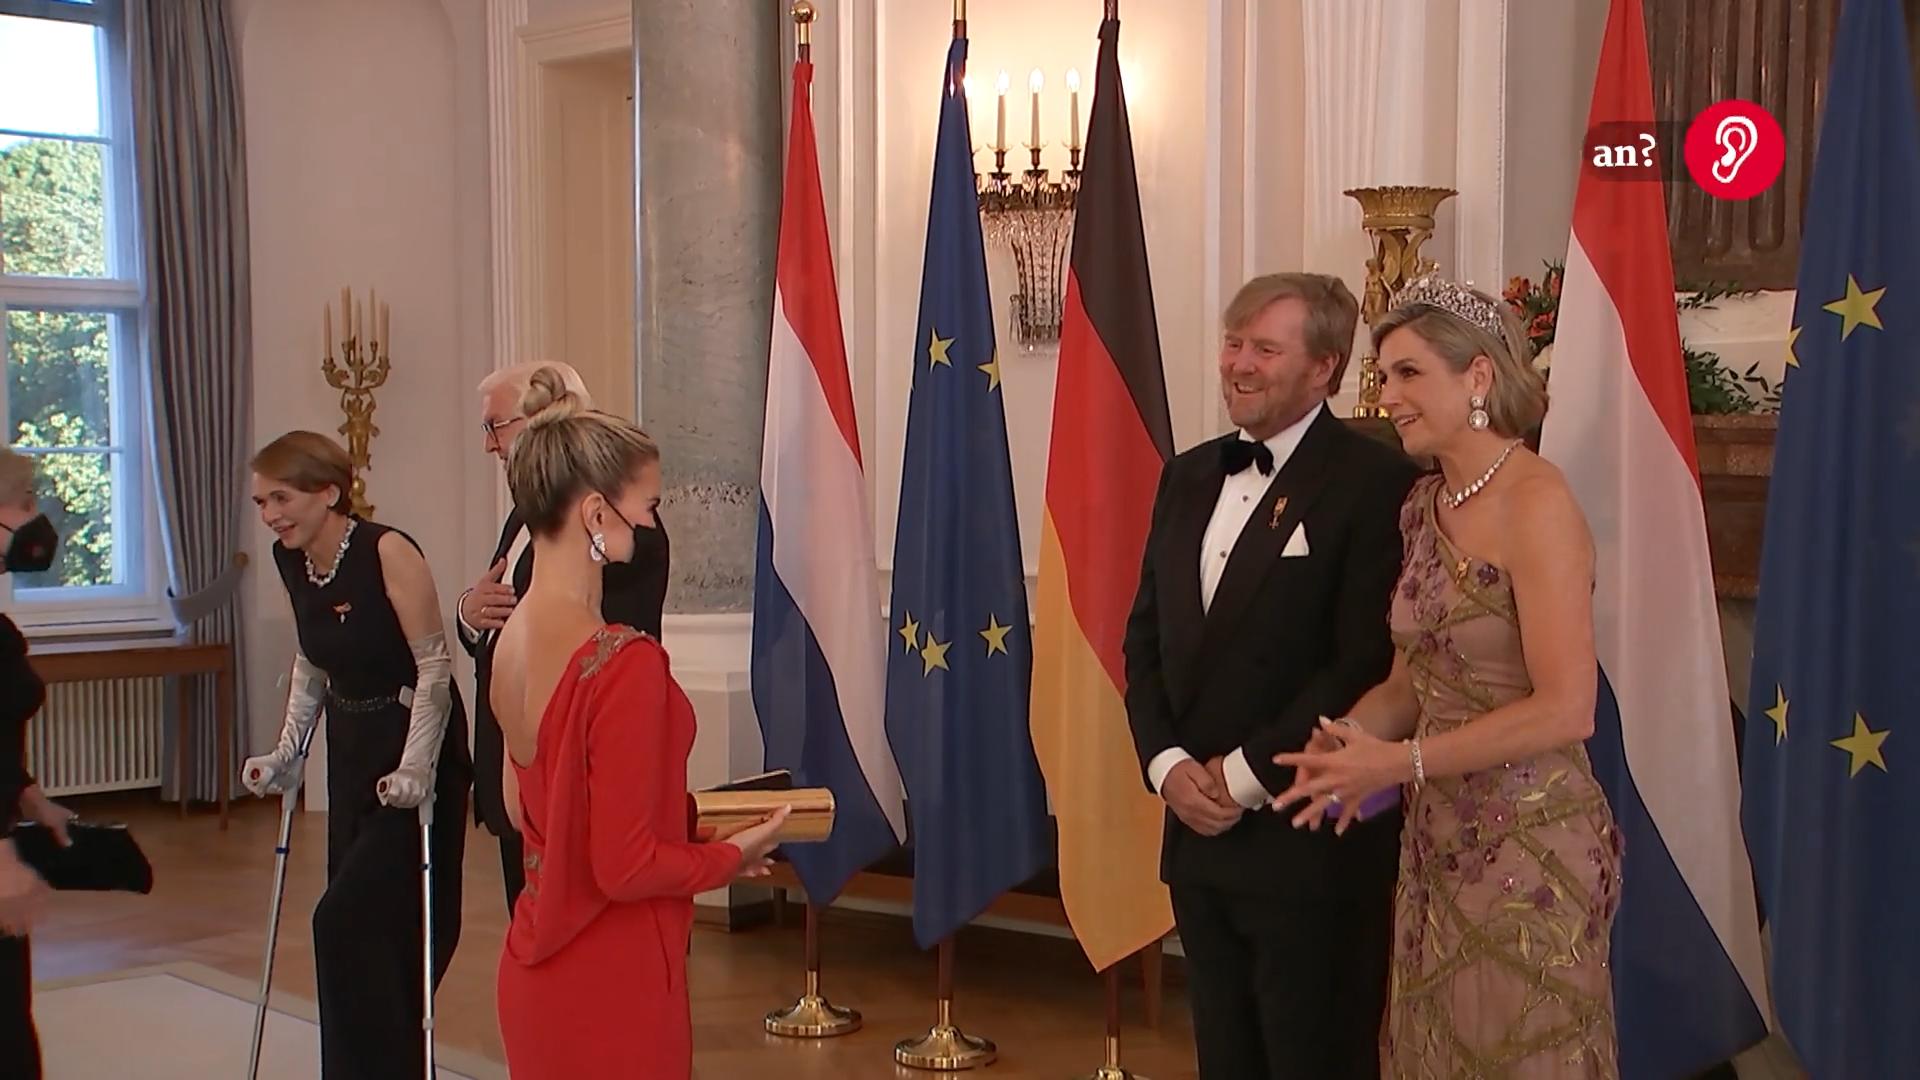 Sylvie Mies conoce a la pareja real holandesa, un homenaje especial para ella "Nunca olvides" Convertirse